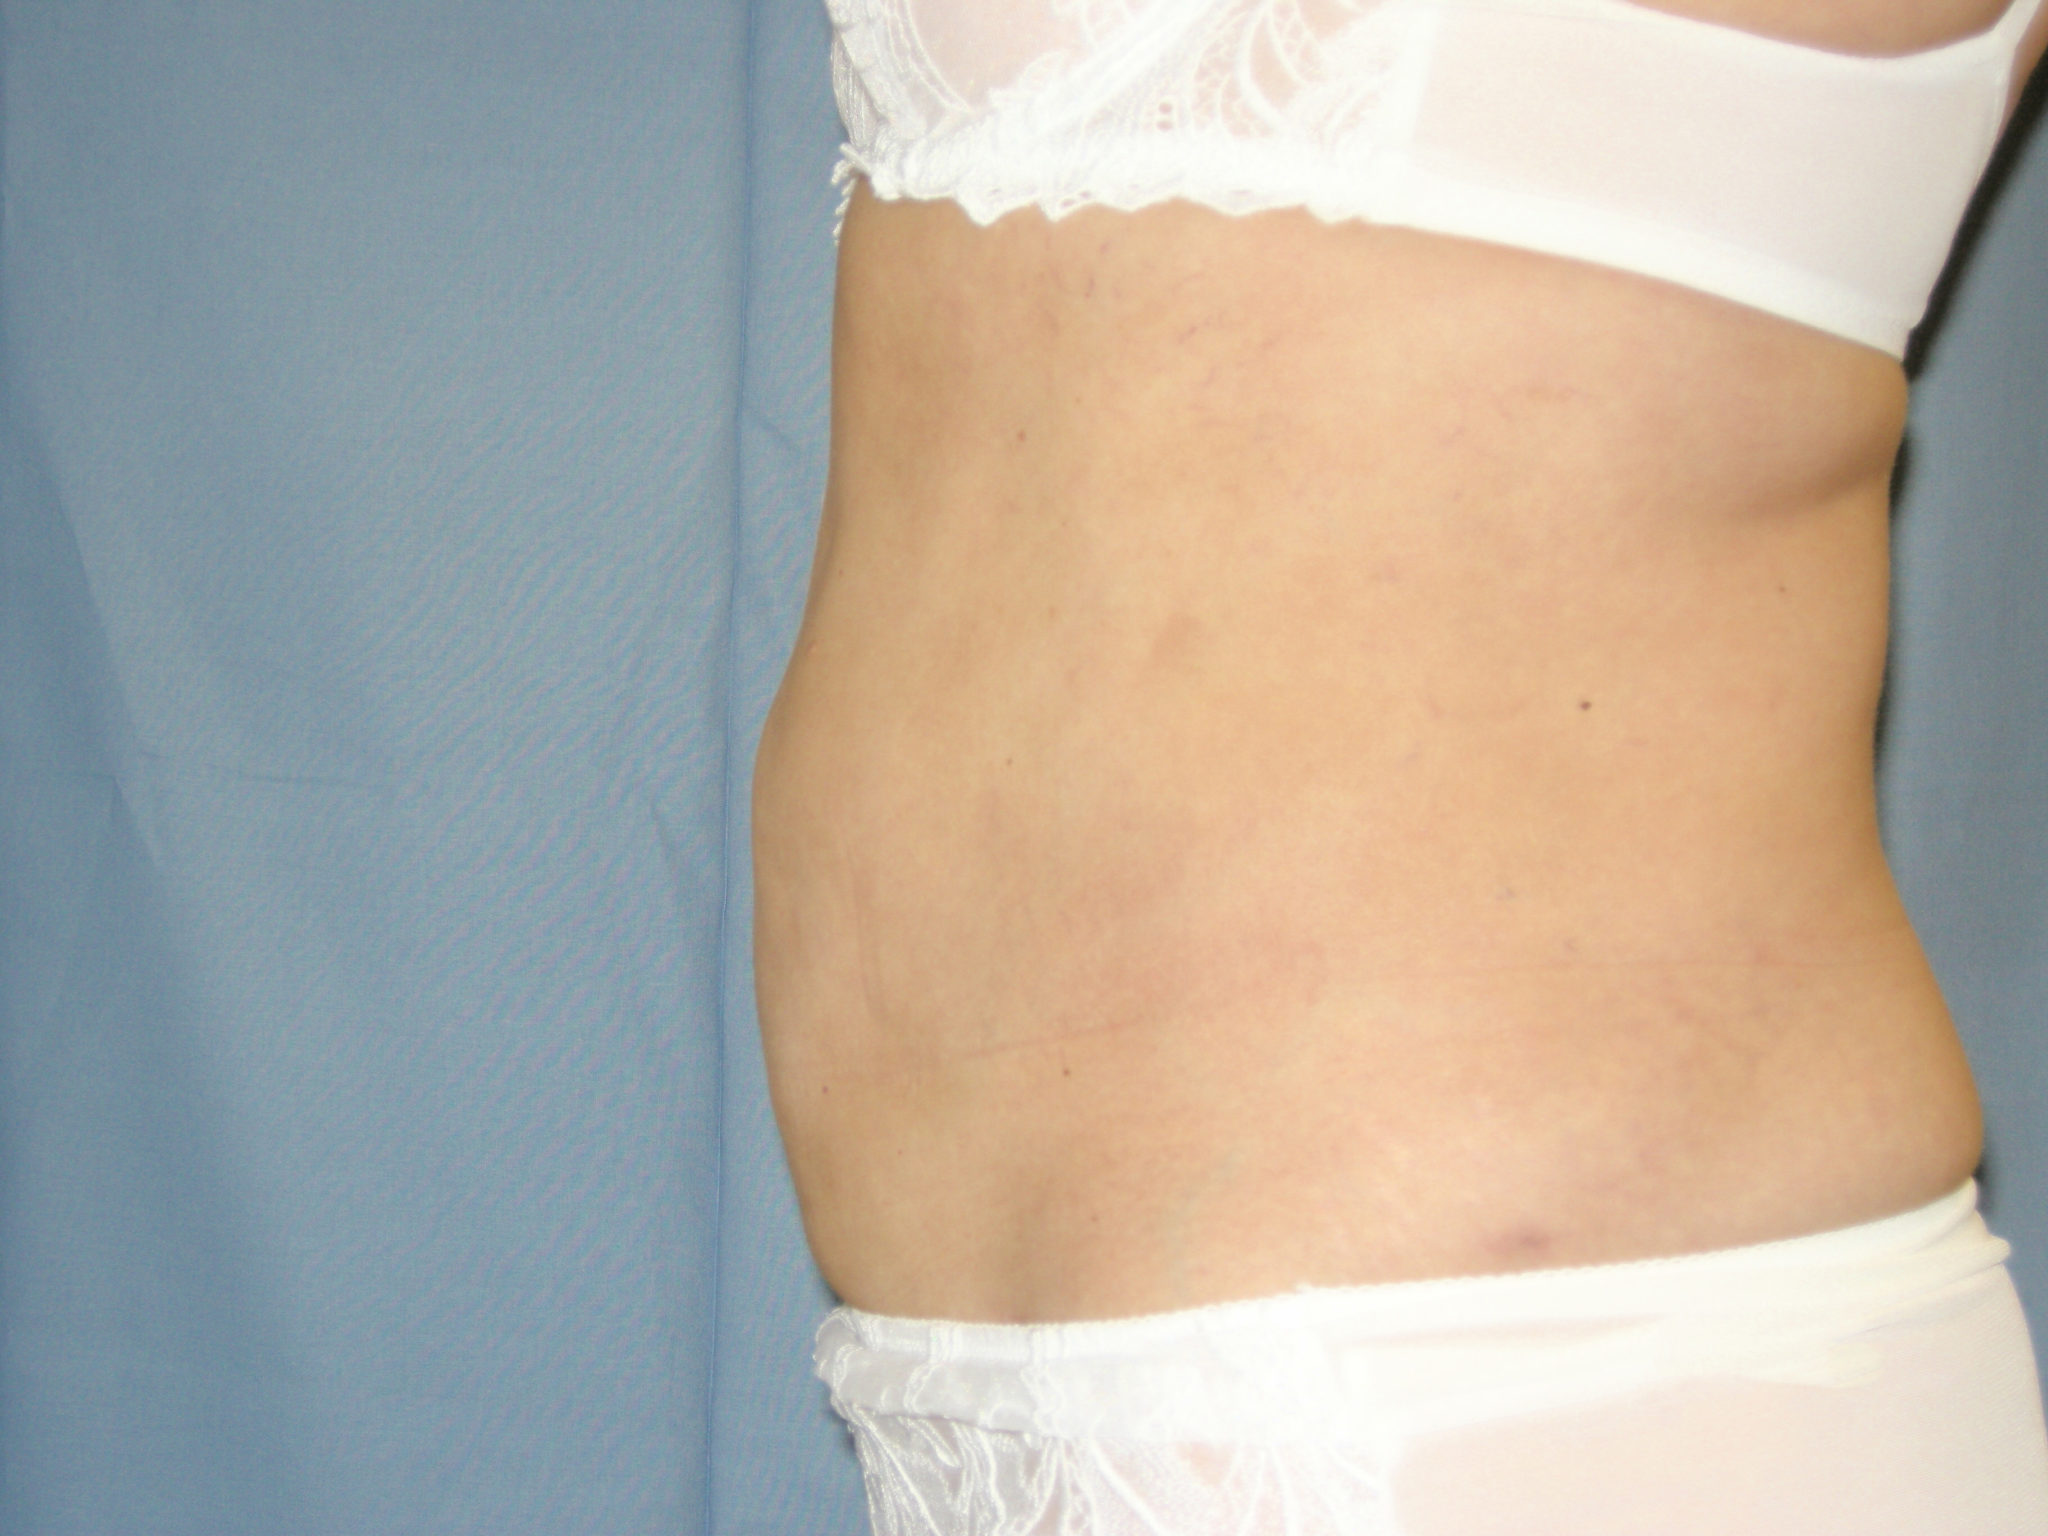 Liposuction Patient Photo - Case 3217 - after view-1